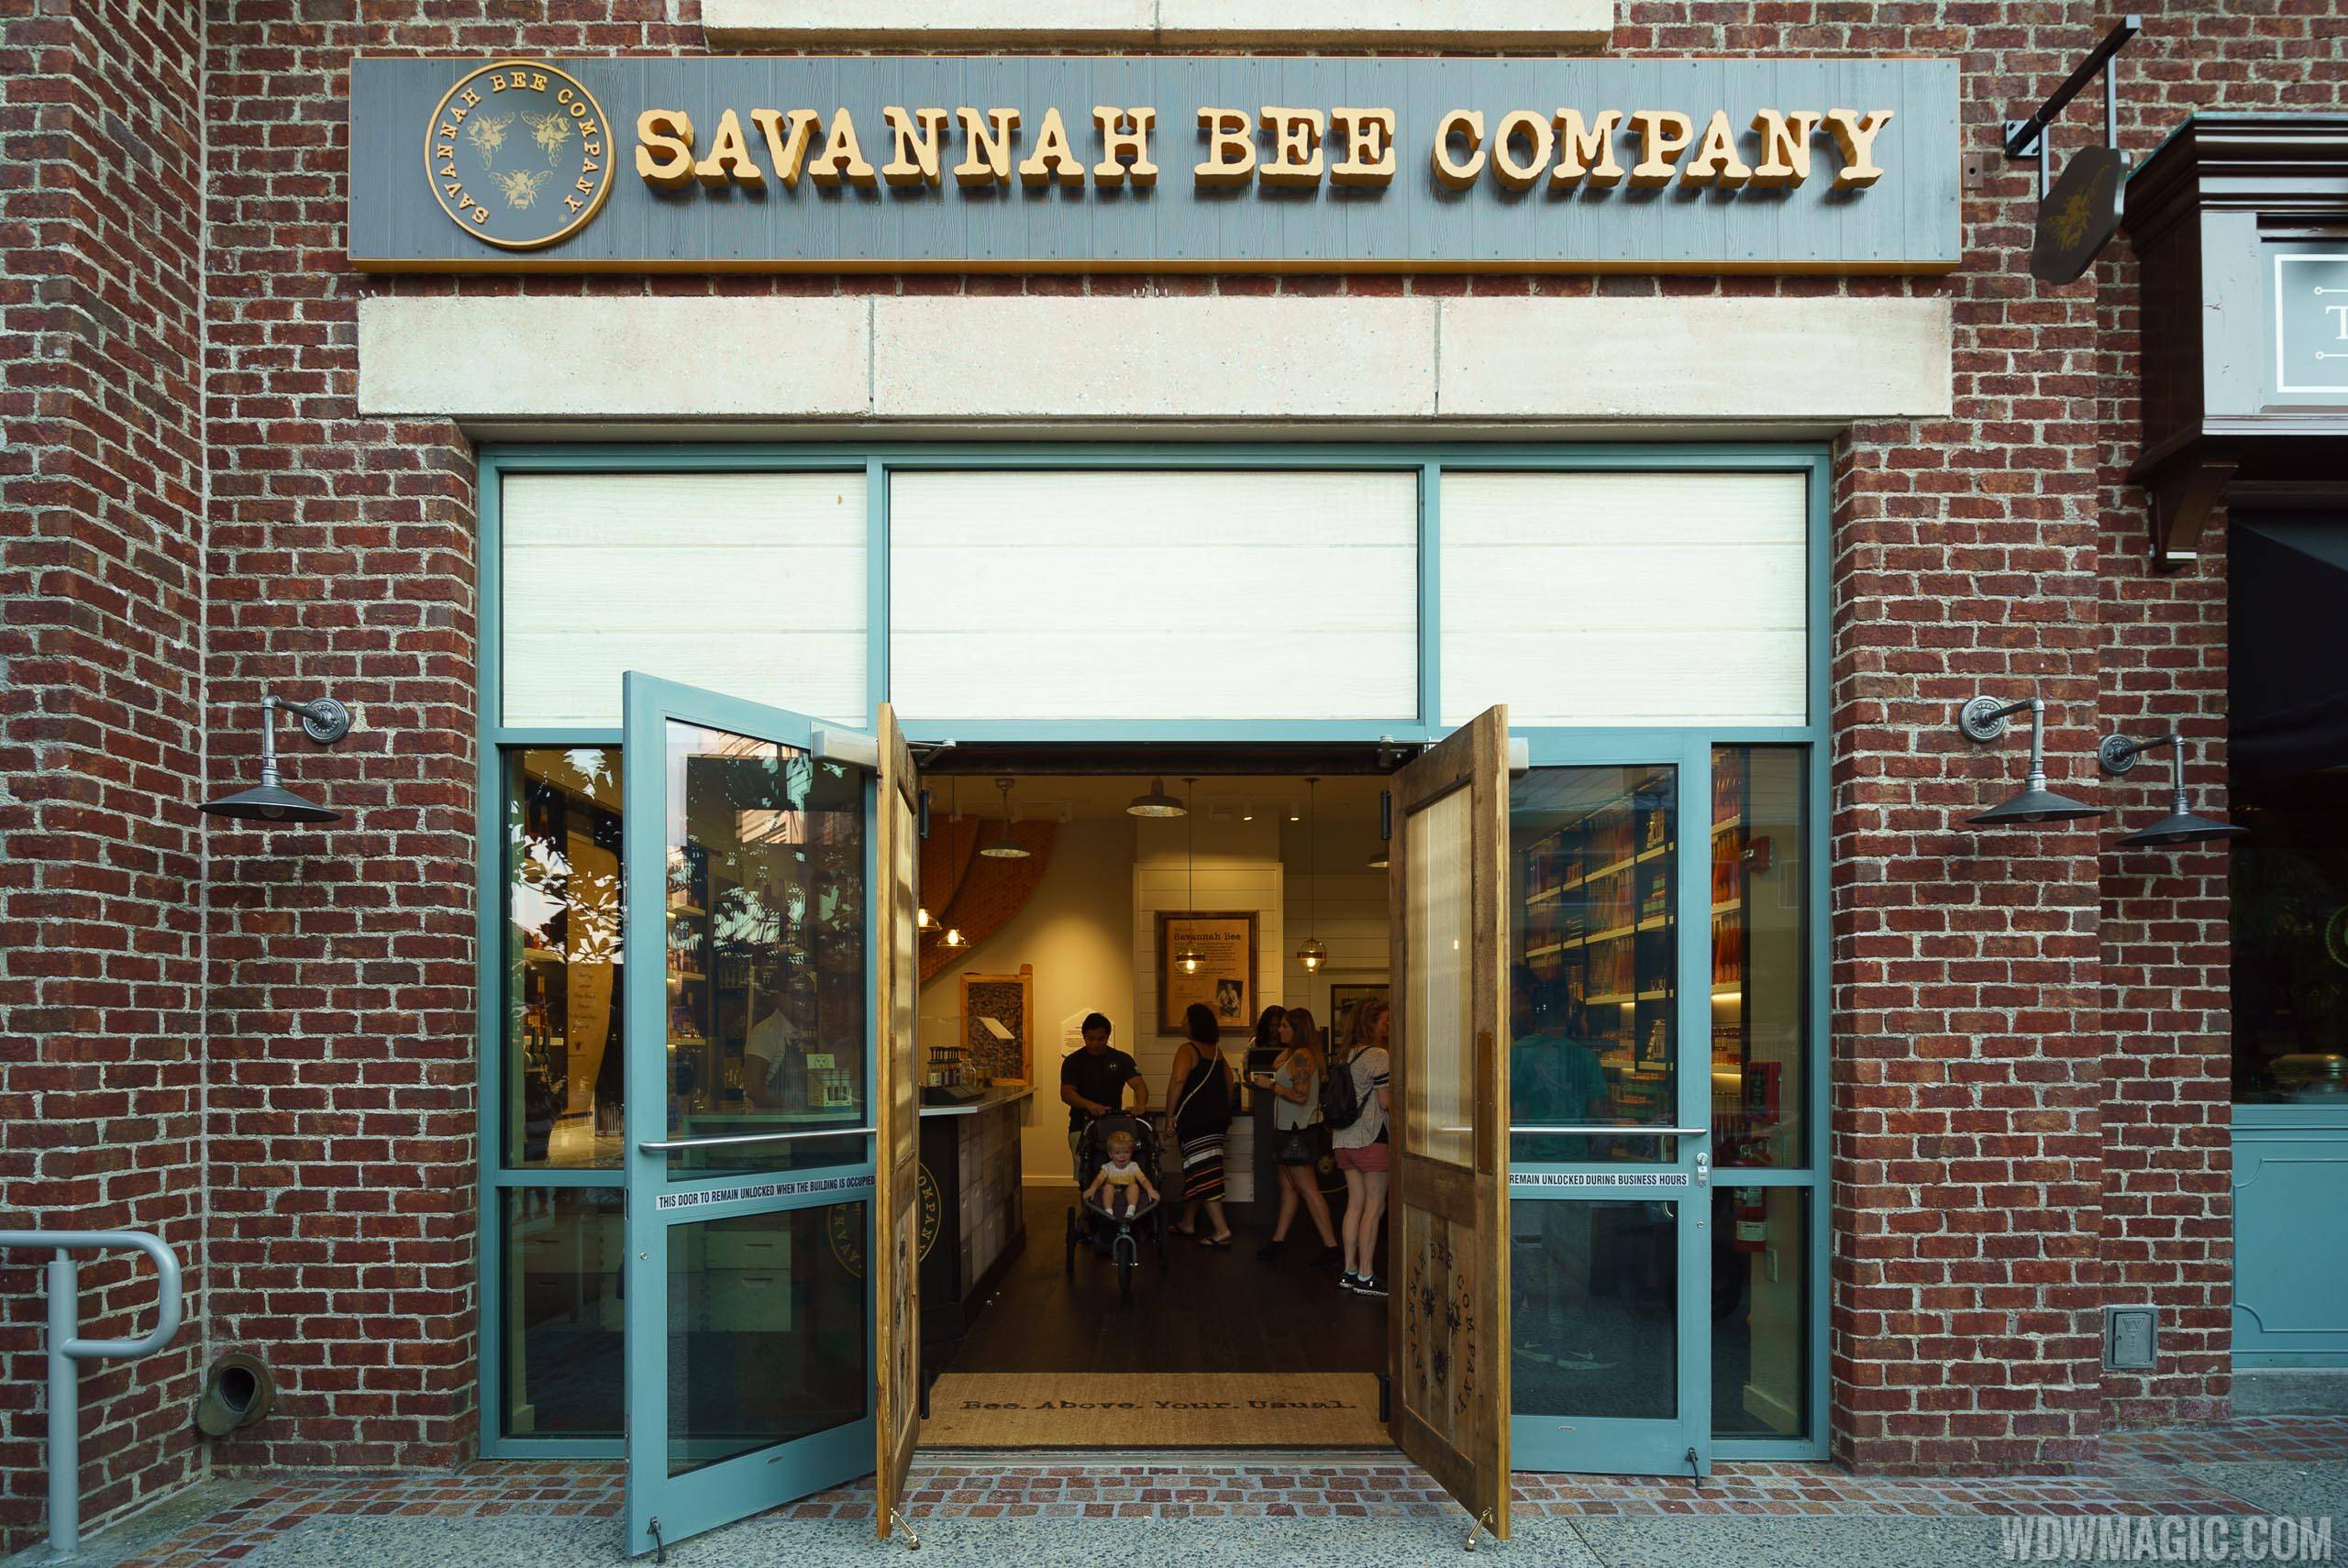  Savannah Bee Company store